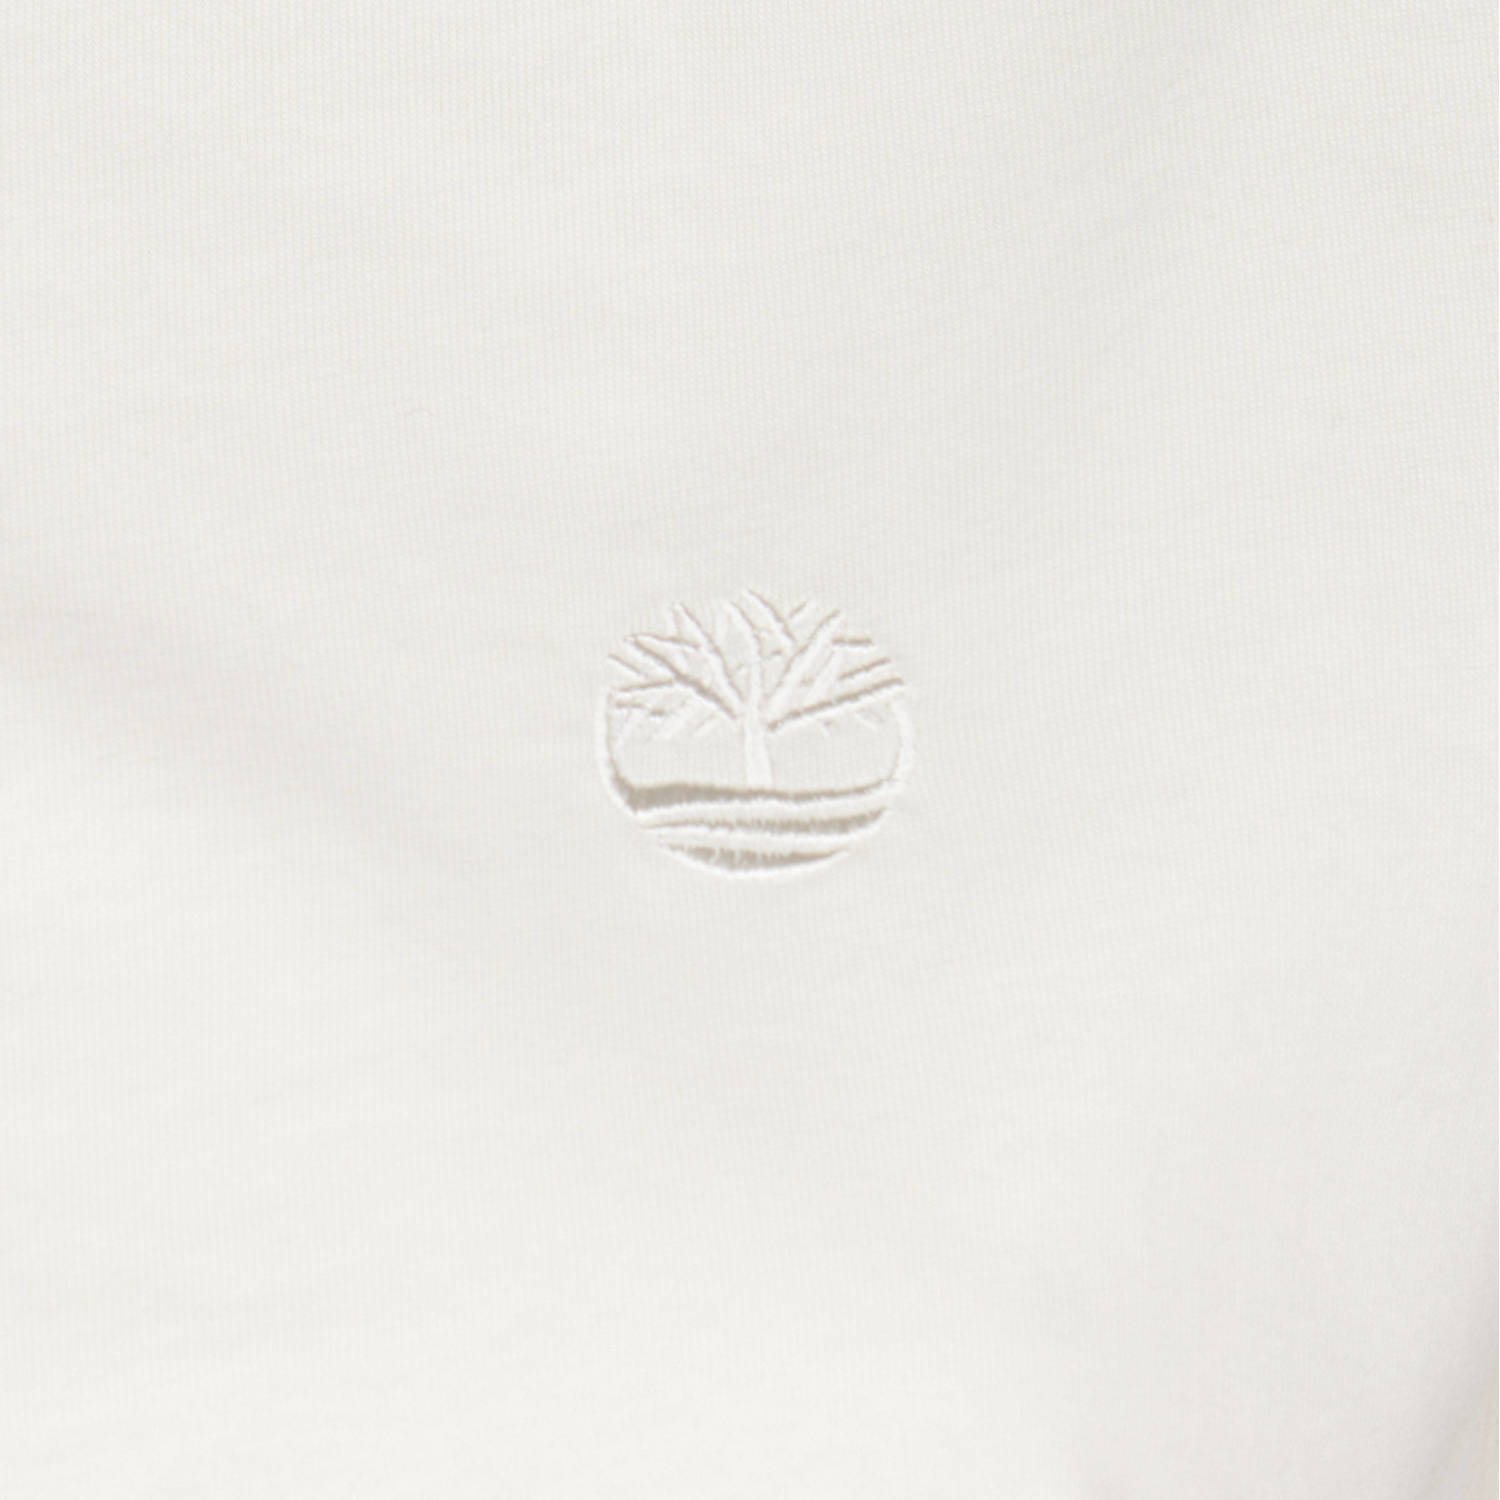 Timberland T-shirt met logo wit